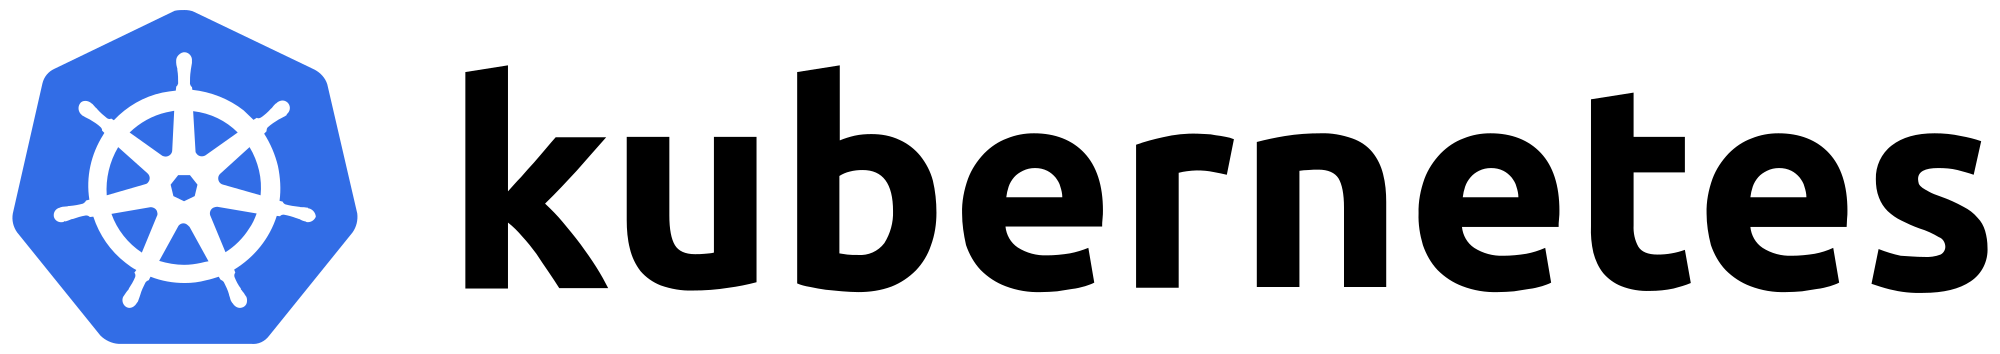 2000px-Kubernetes_logo